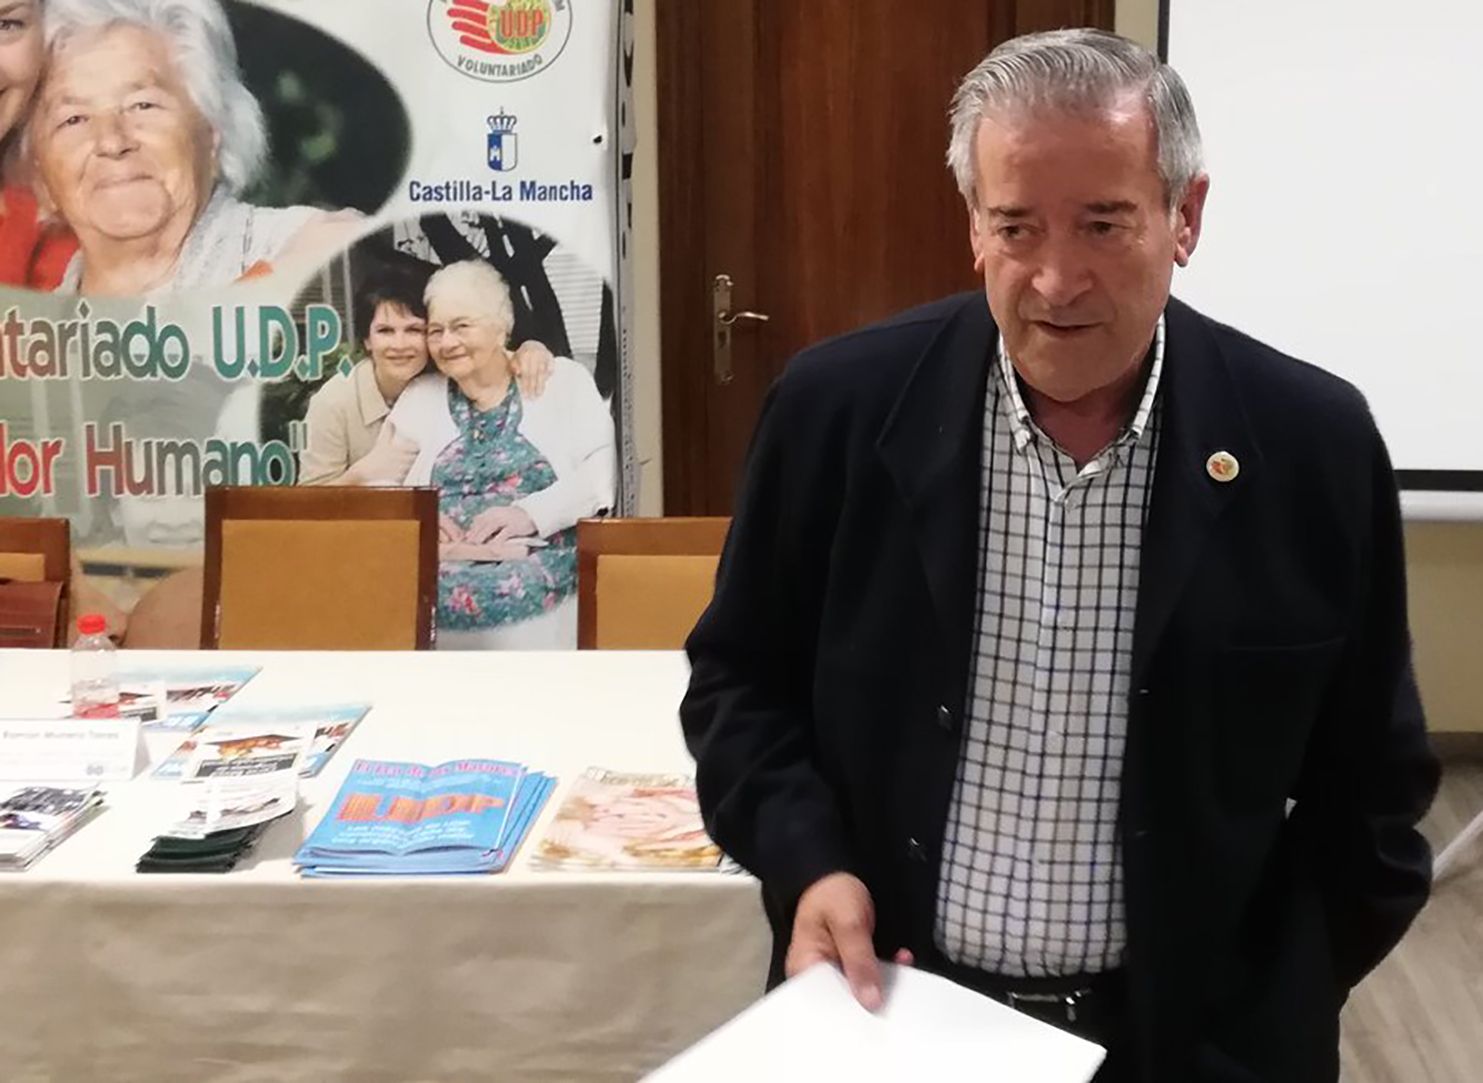 Ramón Munera (UDP Castilla-La Mancha): "La despoblación aboca a los mayores a la soledad"